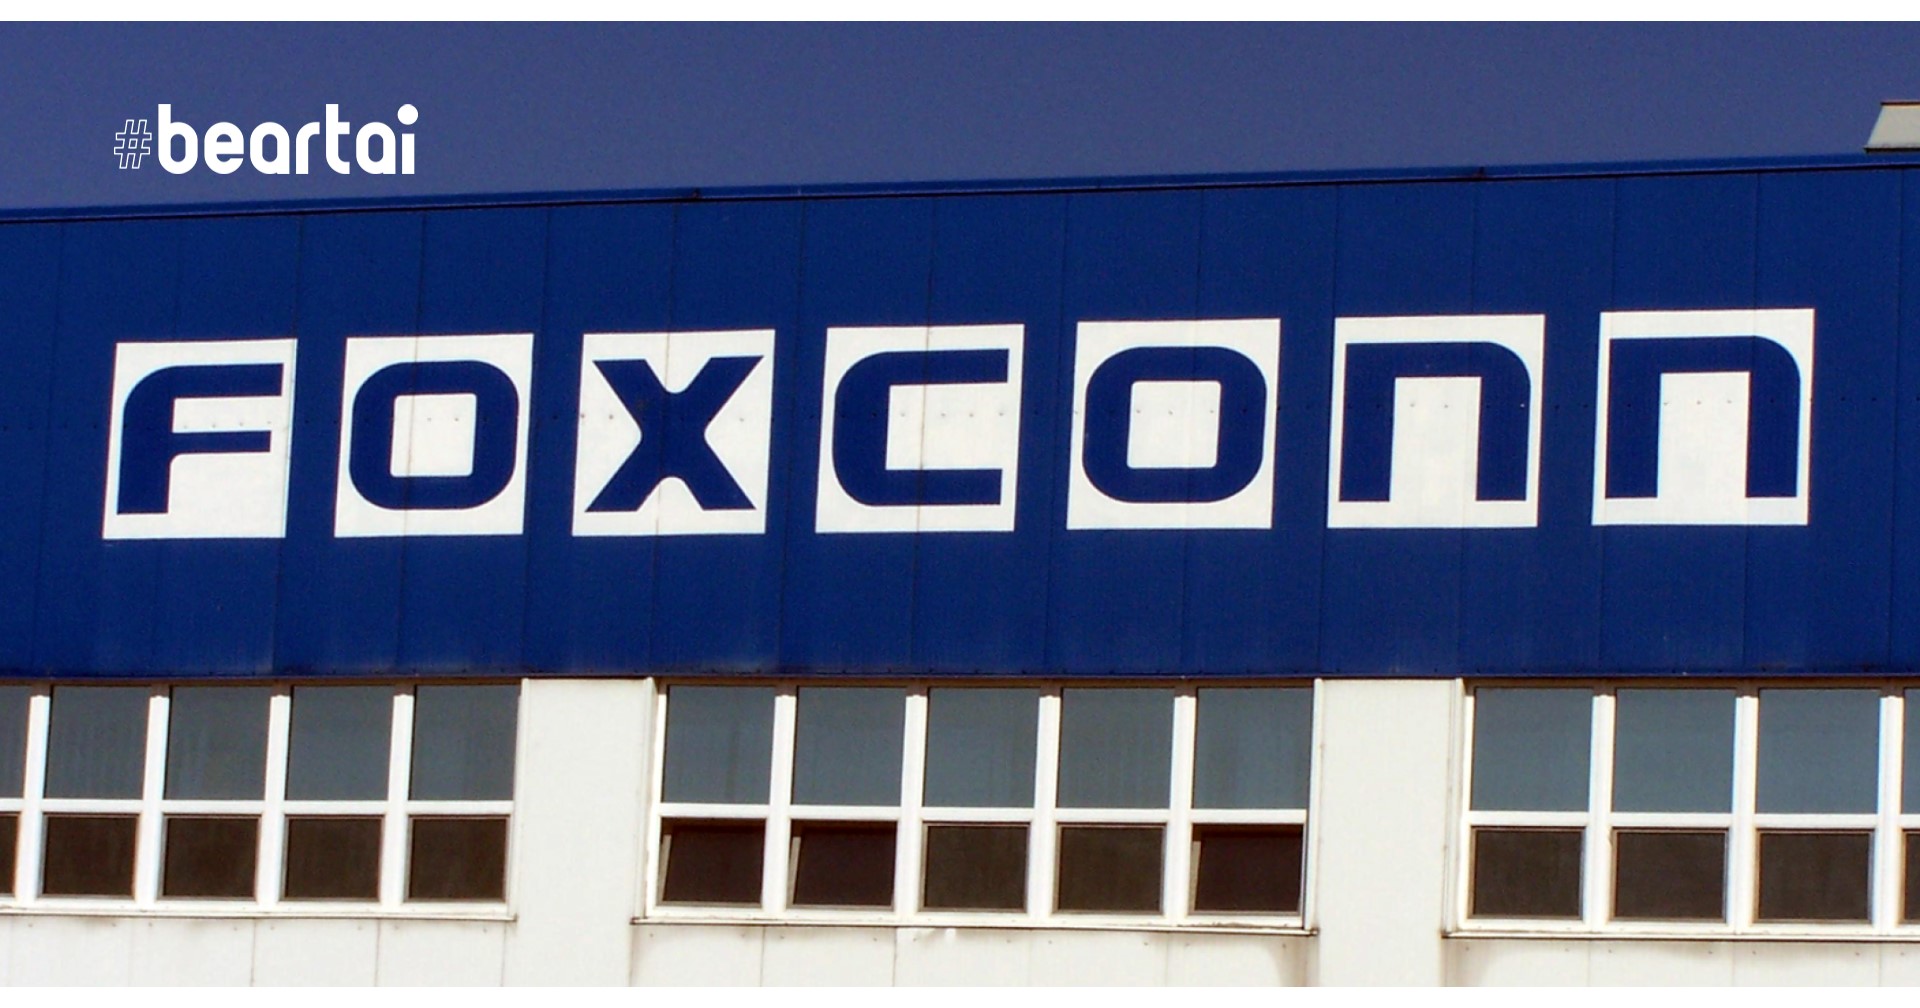 เวียดนามออกใบอนุญาตแก่ Foxconn สร้างโรงงานผลิต MacBooks และ iPads มูลค่า 270 ล้านดอลลาร์